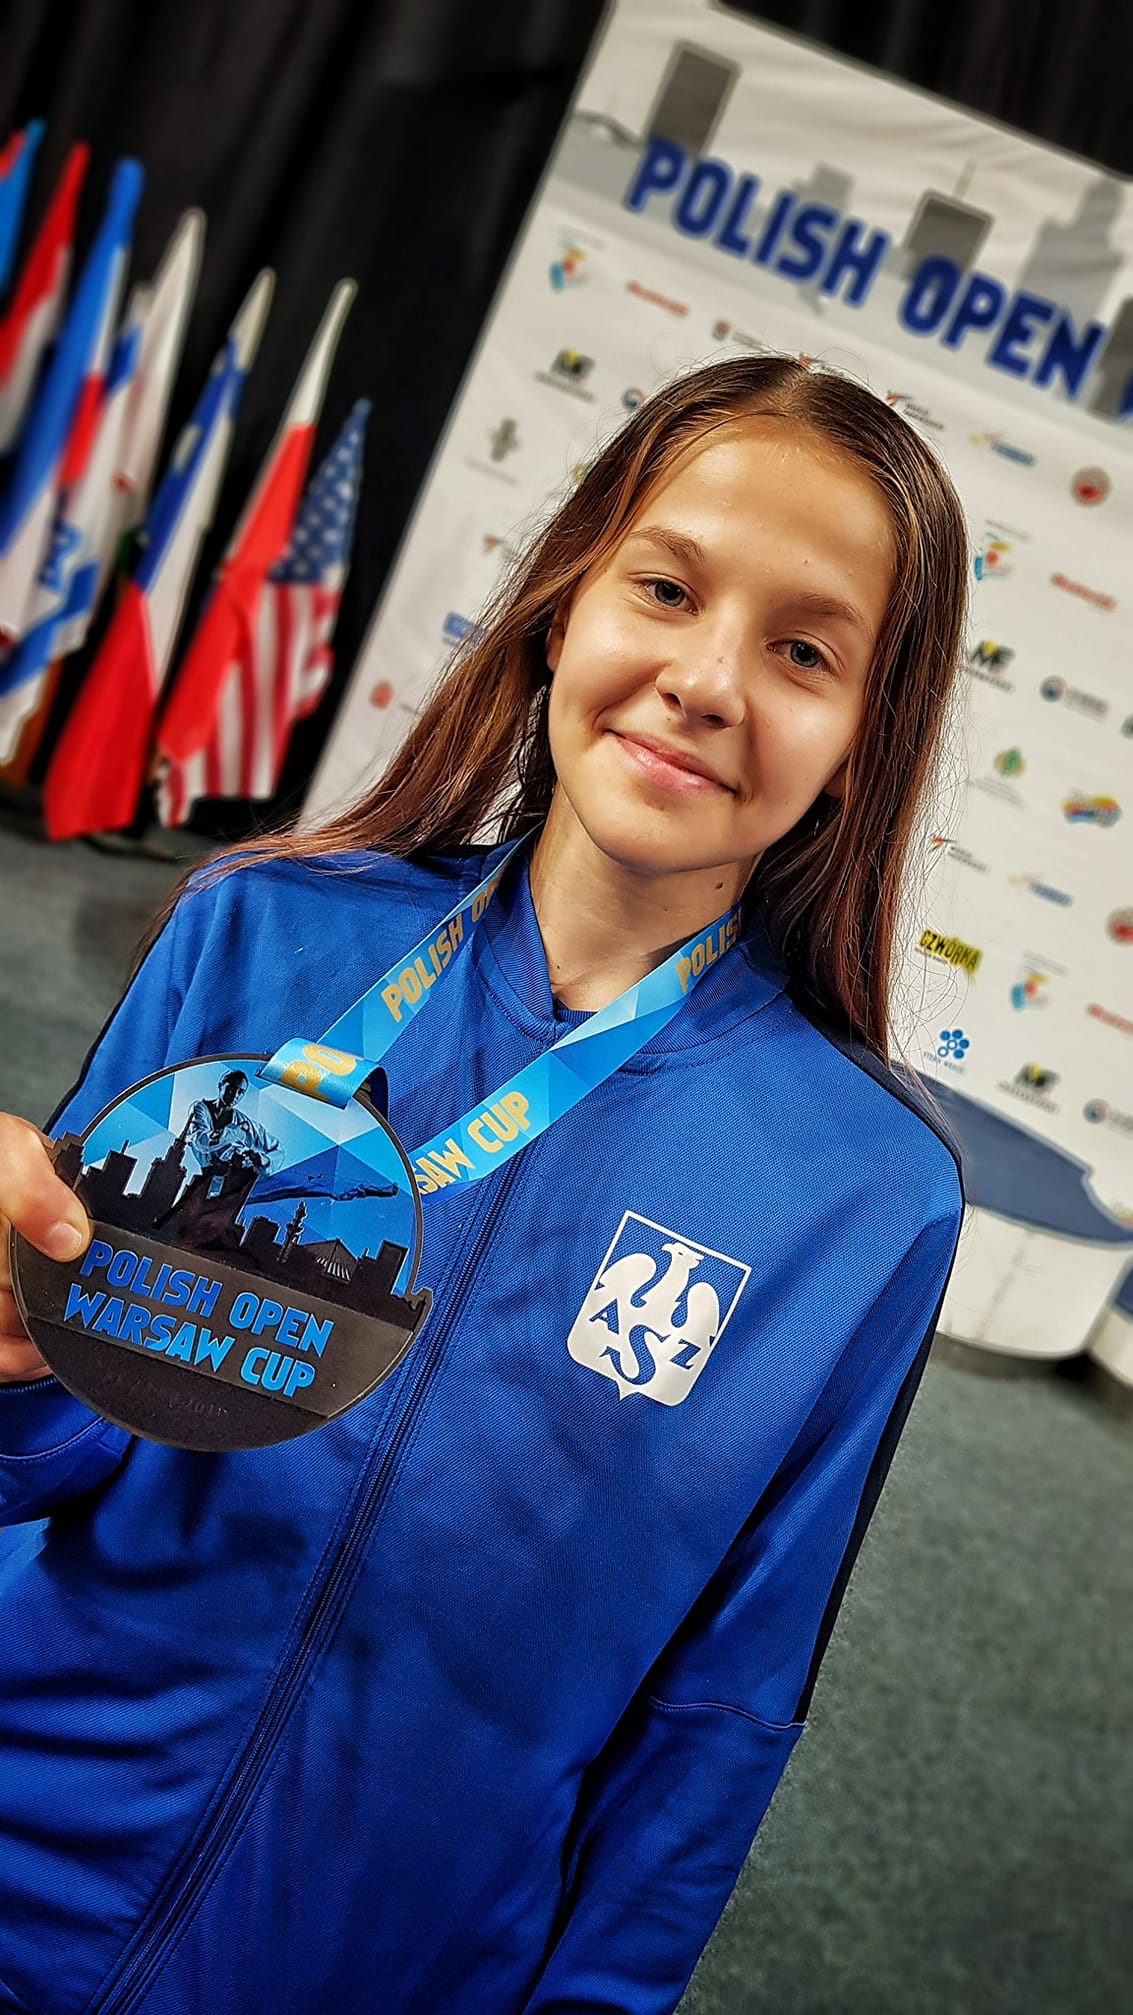 Marta Burzyńska prezentująca medal z Polish Open Warsaw Cup.